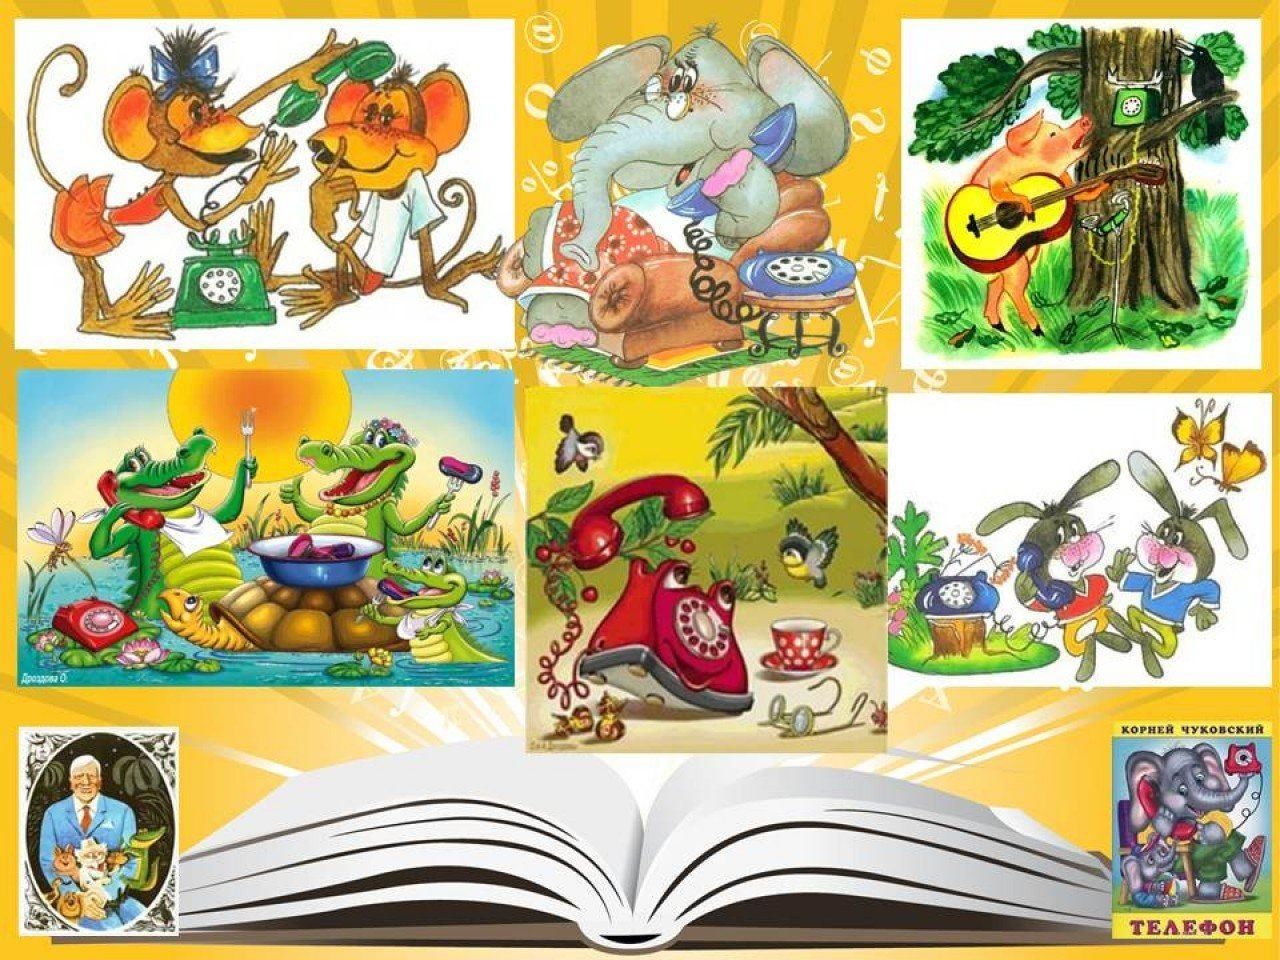 Коллаж героев книг Корнея Чуковского для детей